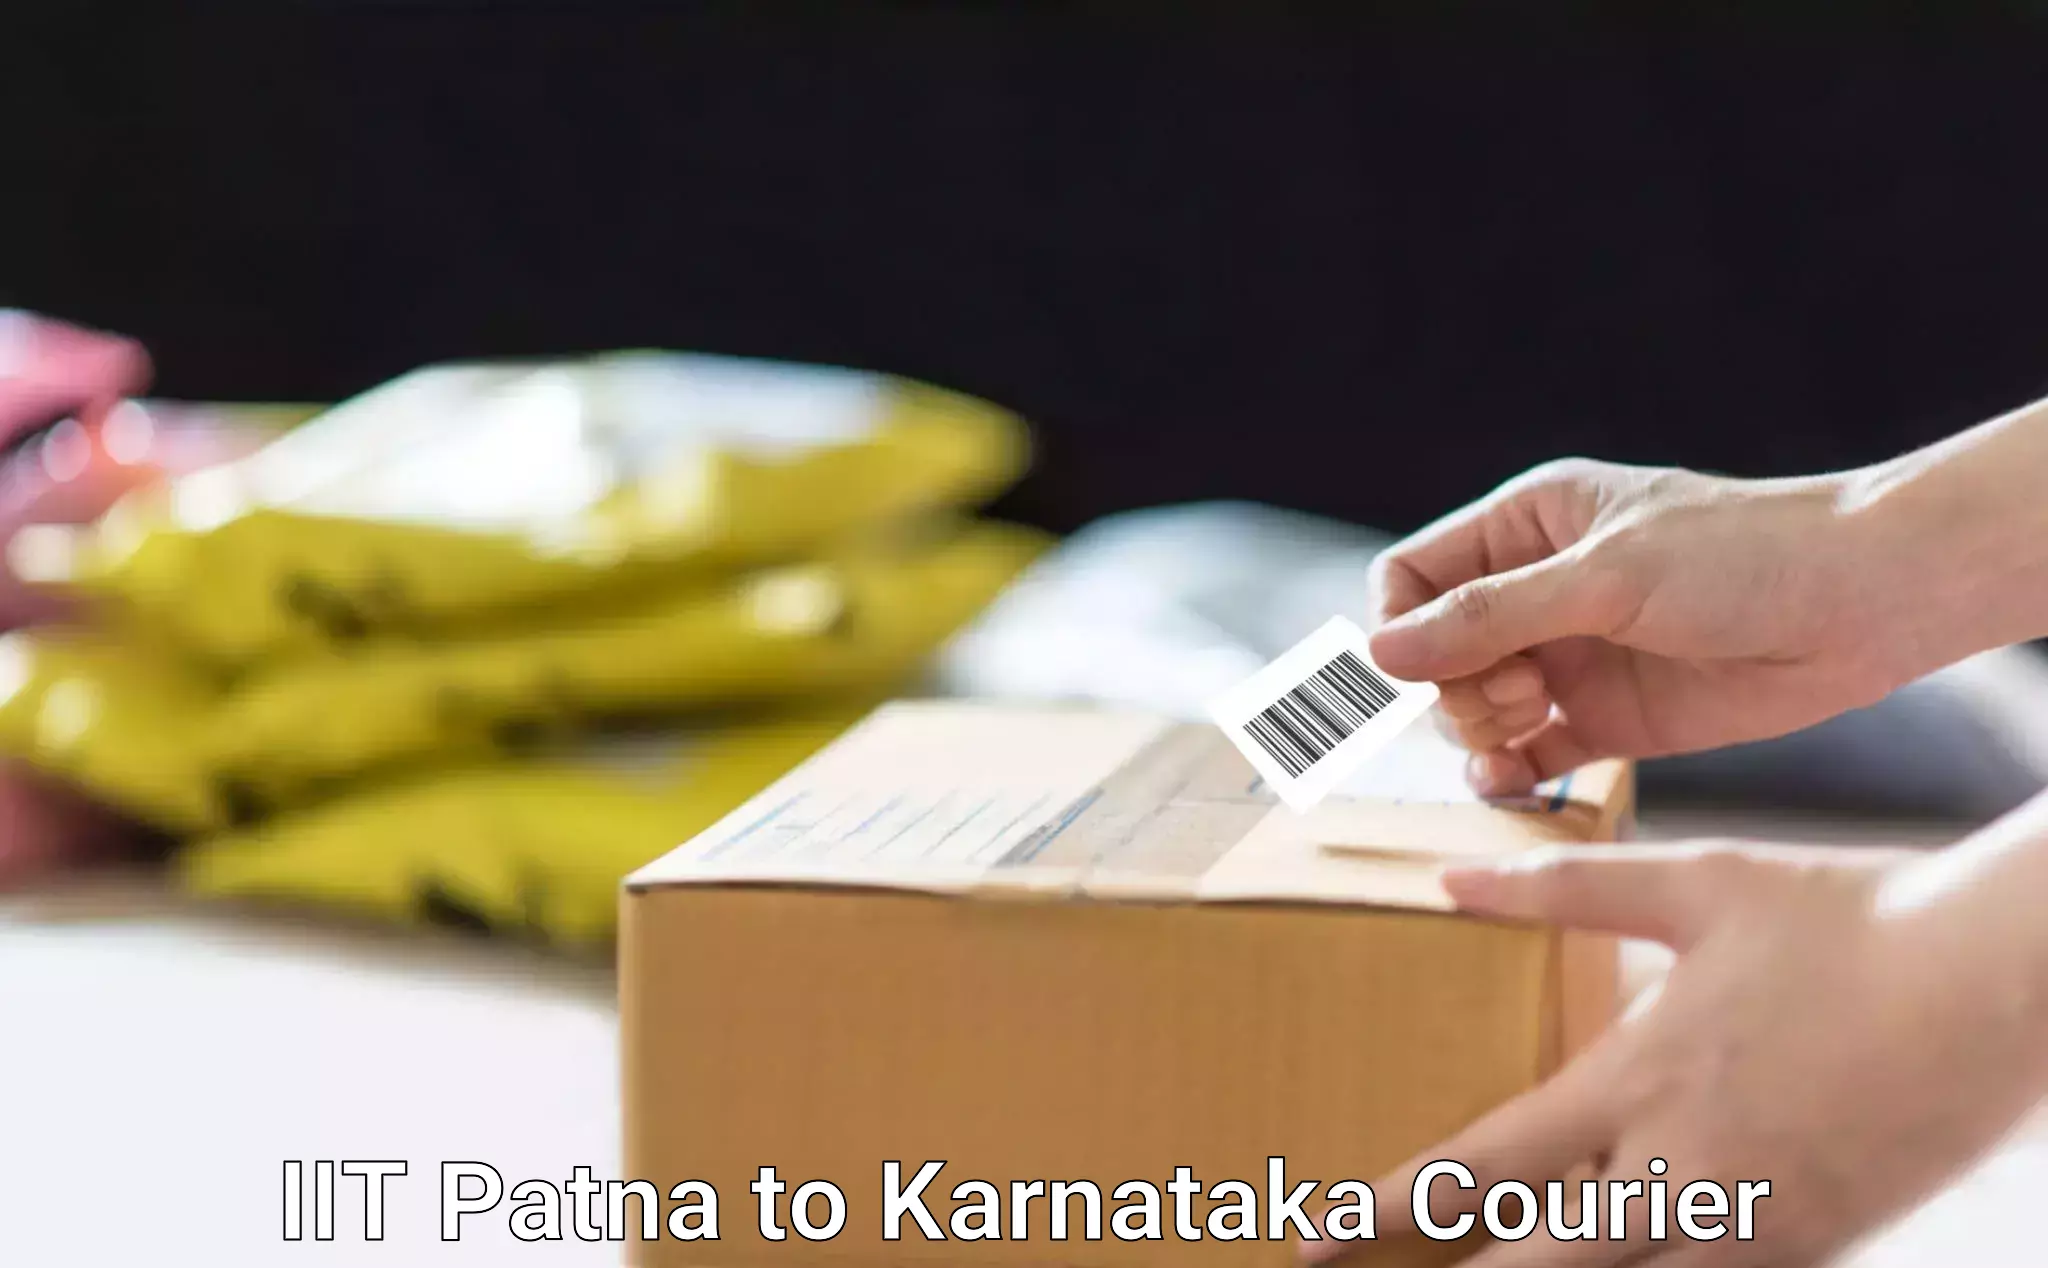 Safe furniture transport IIT Patna to Karnataka